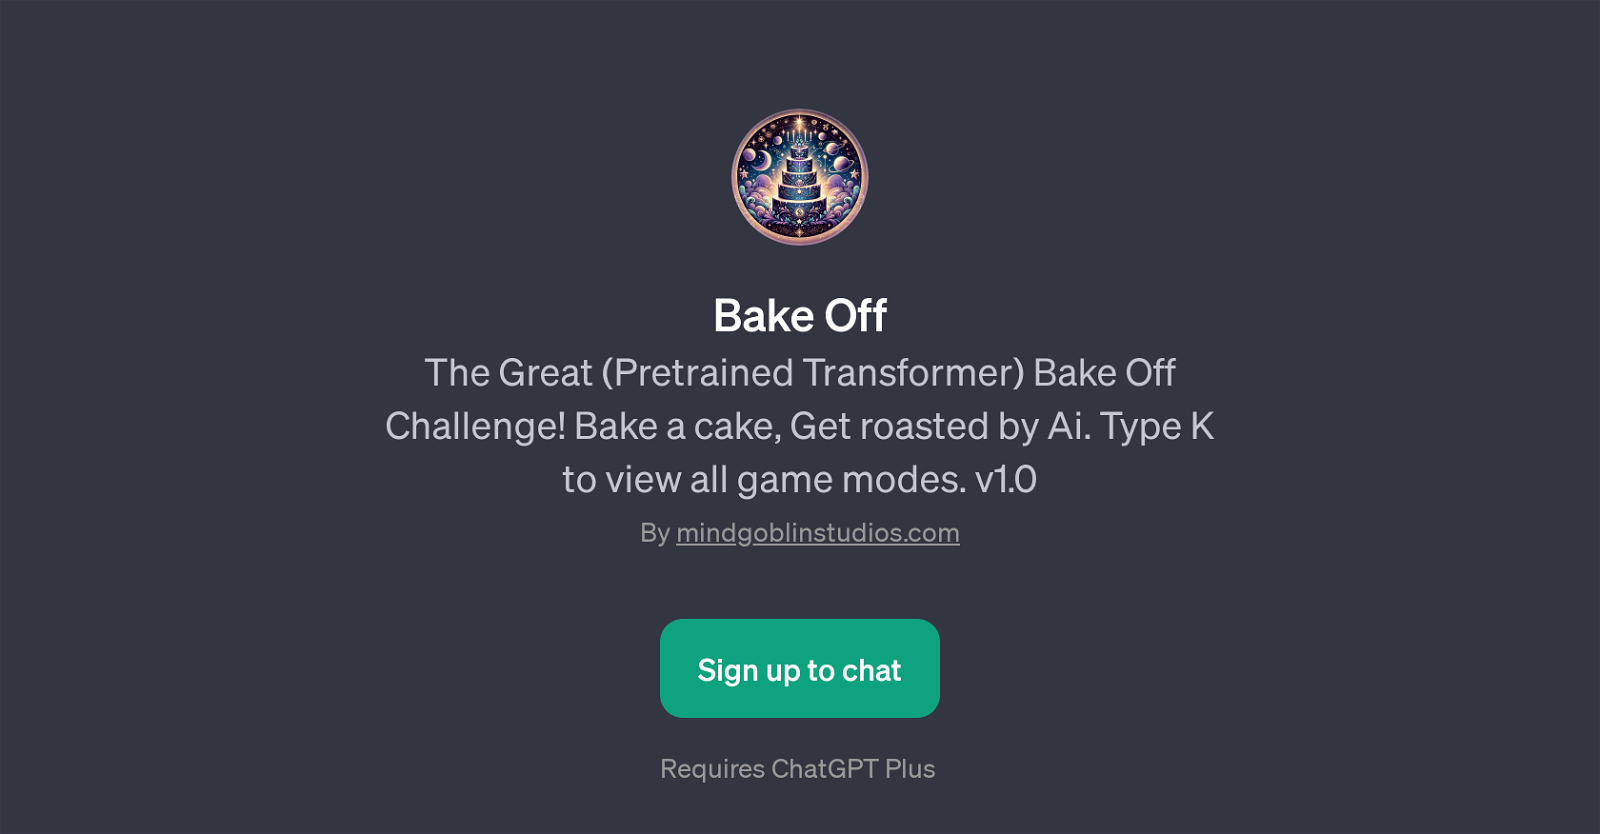 Bake Off website